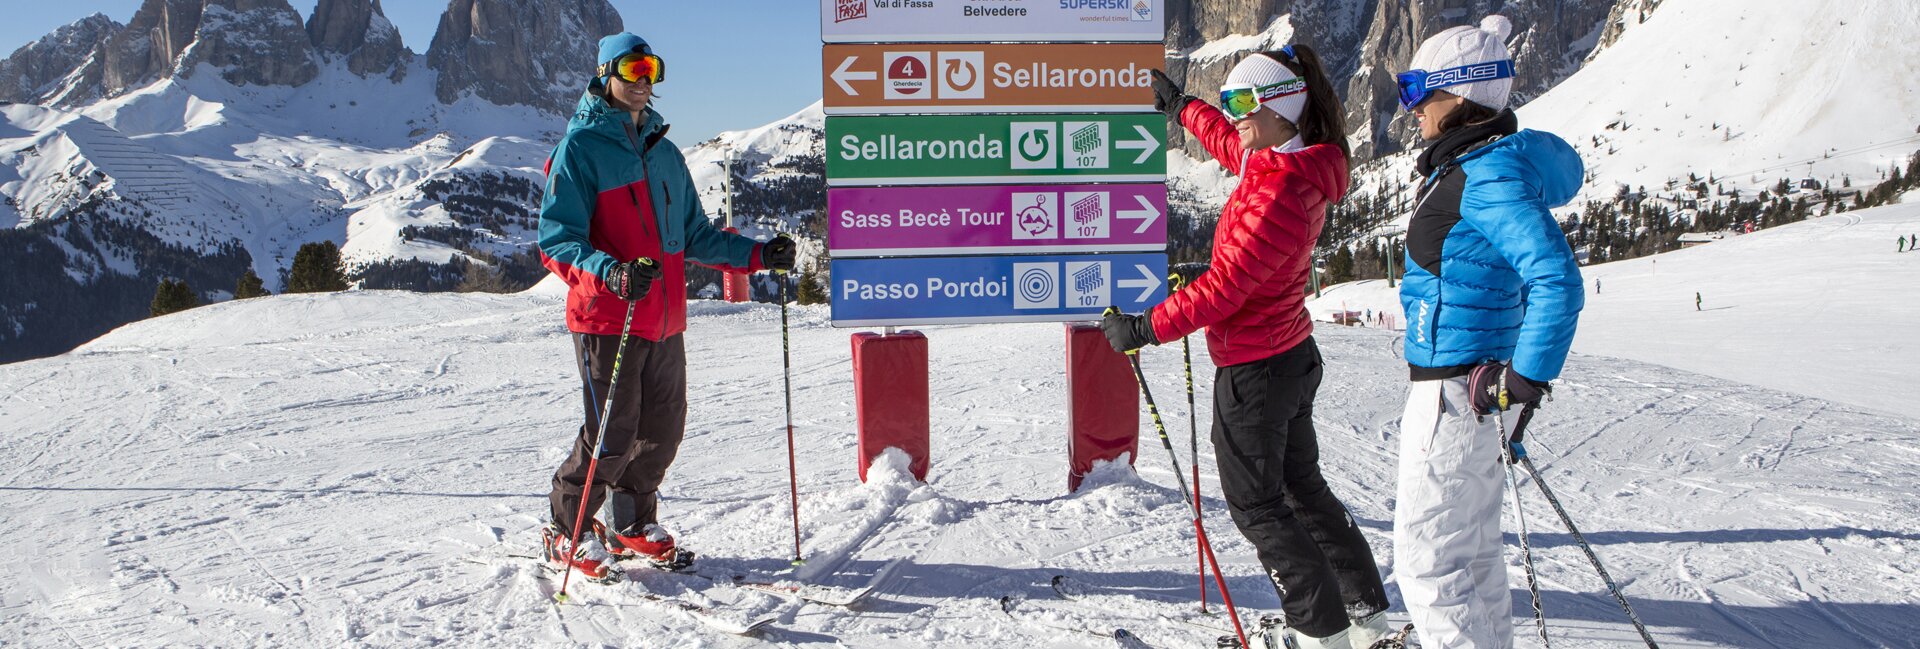 Ski resort Val di Fassa | Skiing in the Dolomites